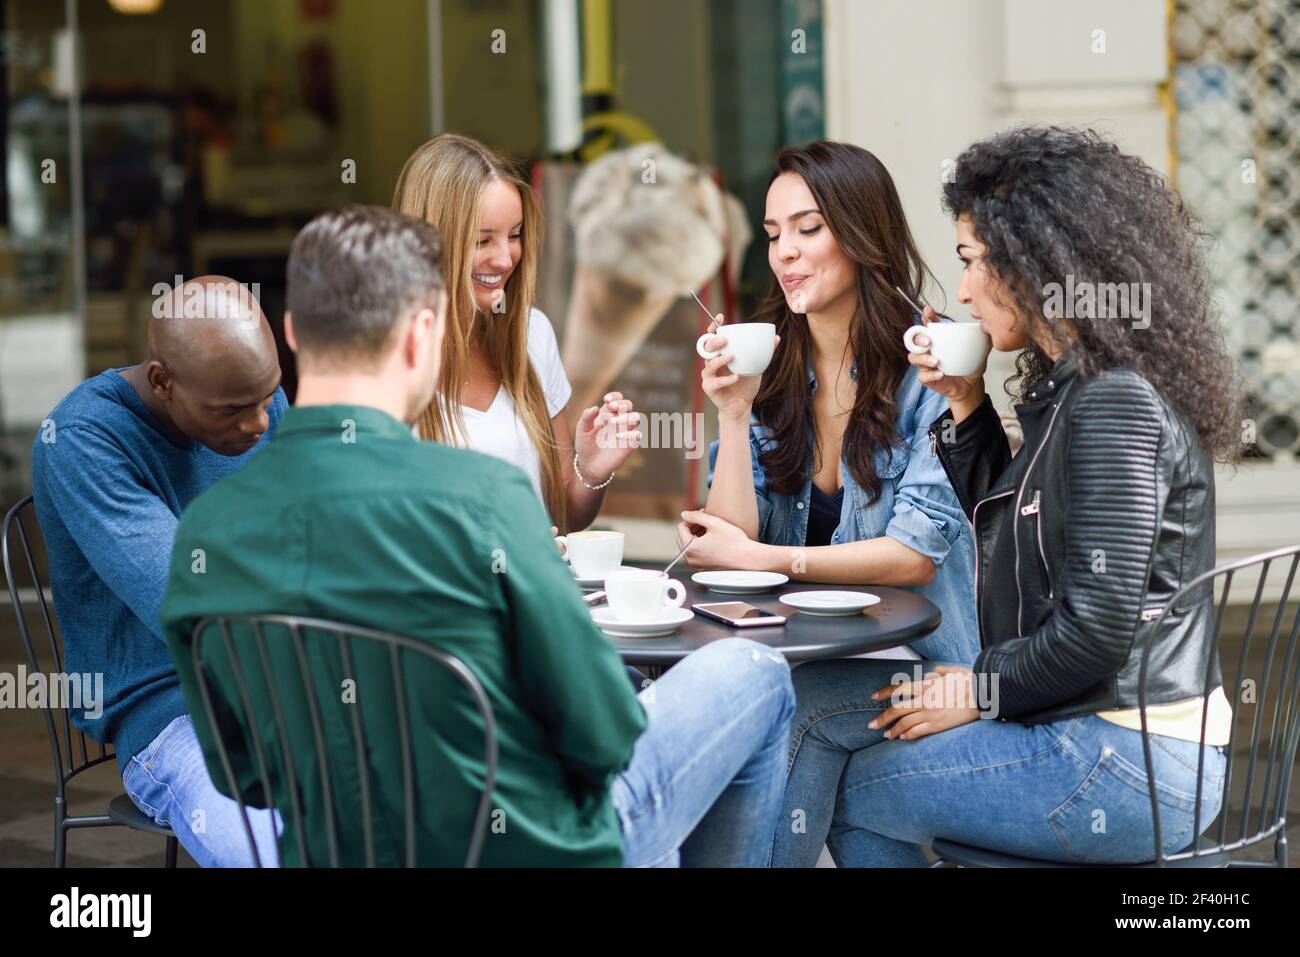 Multiethnische Gruppe von fünf Freunden einen Kaffee zusammen. Drei Frauen und zwei Männer im Cafe, reden, lachen und ihre Zeit genießen. Lifestyle und Freundschaft Konzepte mit realen Menschen Modelle Stockfoto